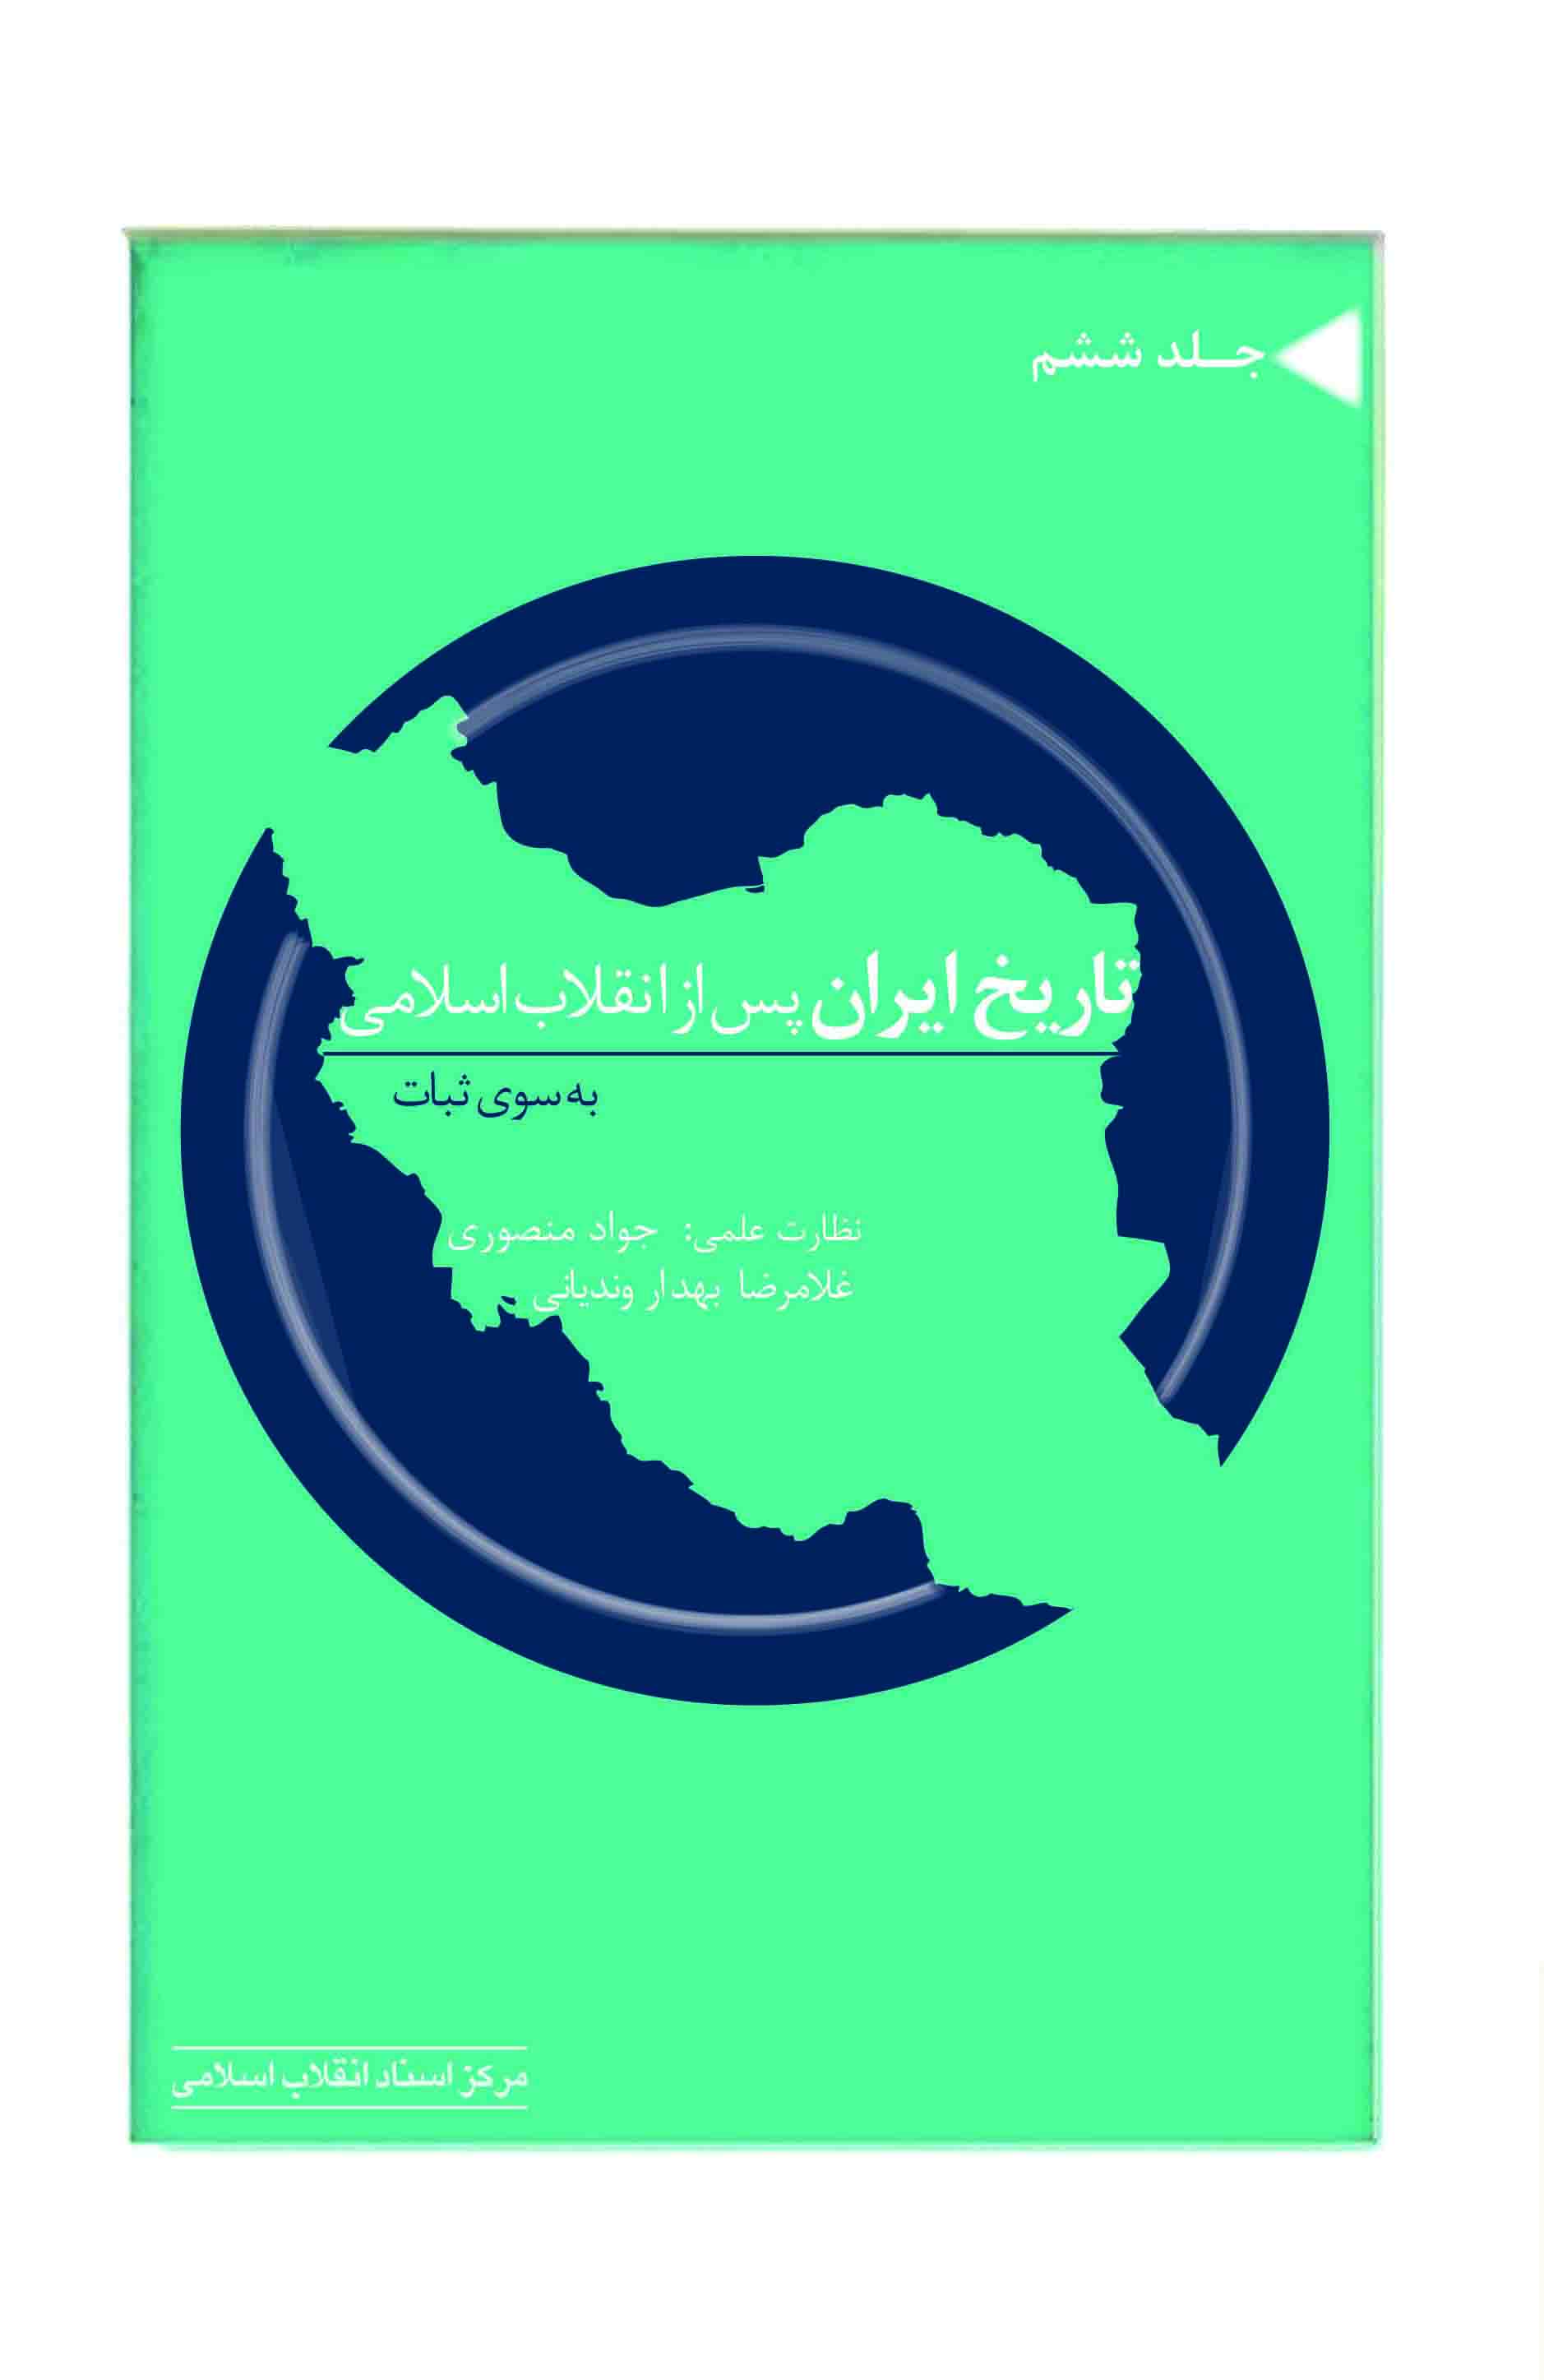 جلد ششم از مجموعه «تاریخ ایران پس از انقلاب اسلامی» خواندنی شد